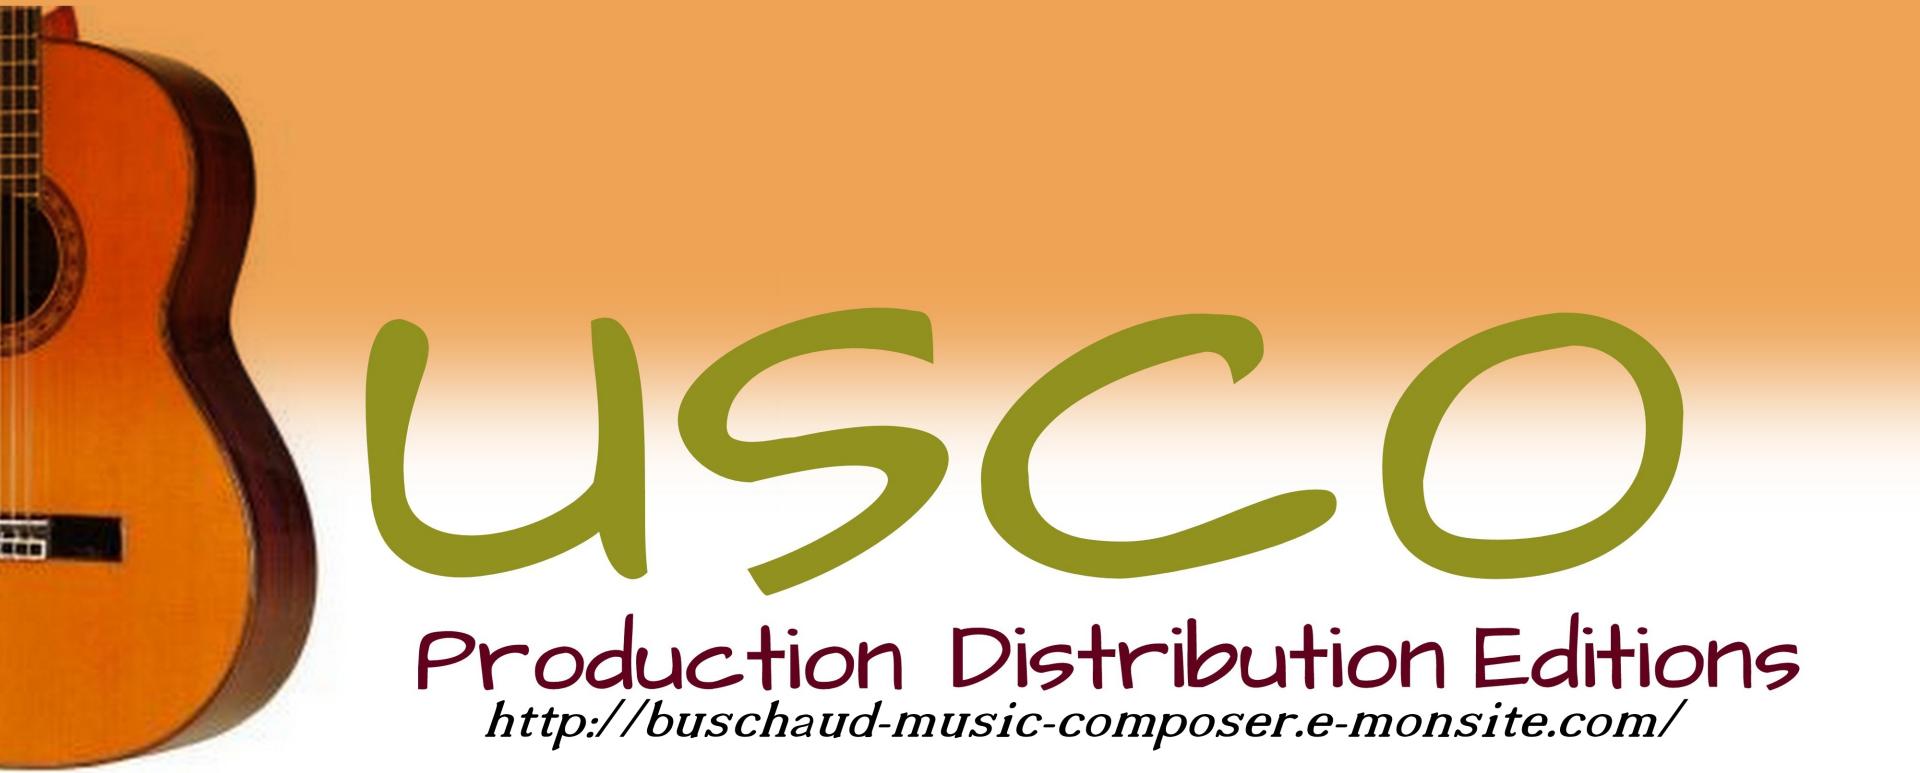 BUSCO musique